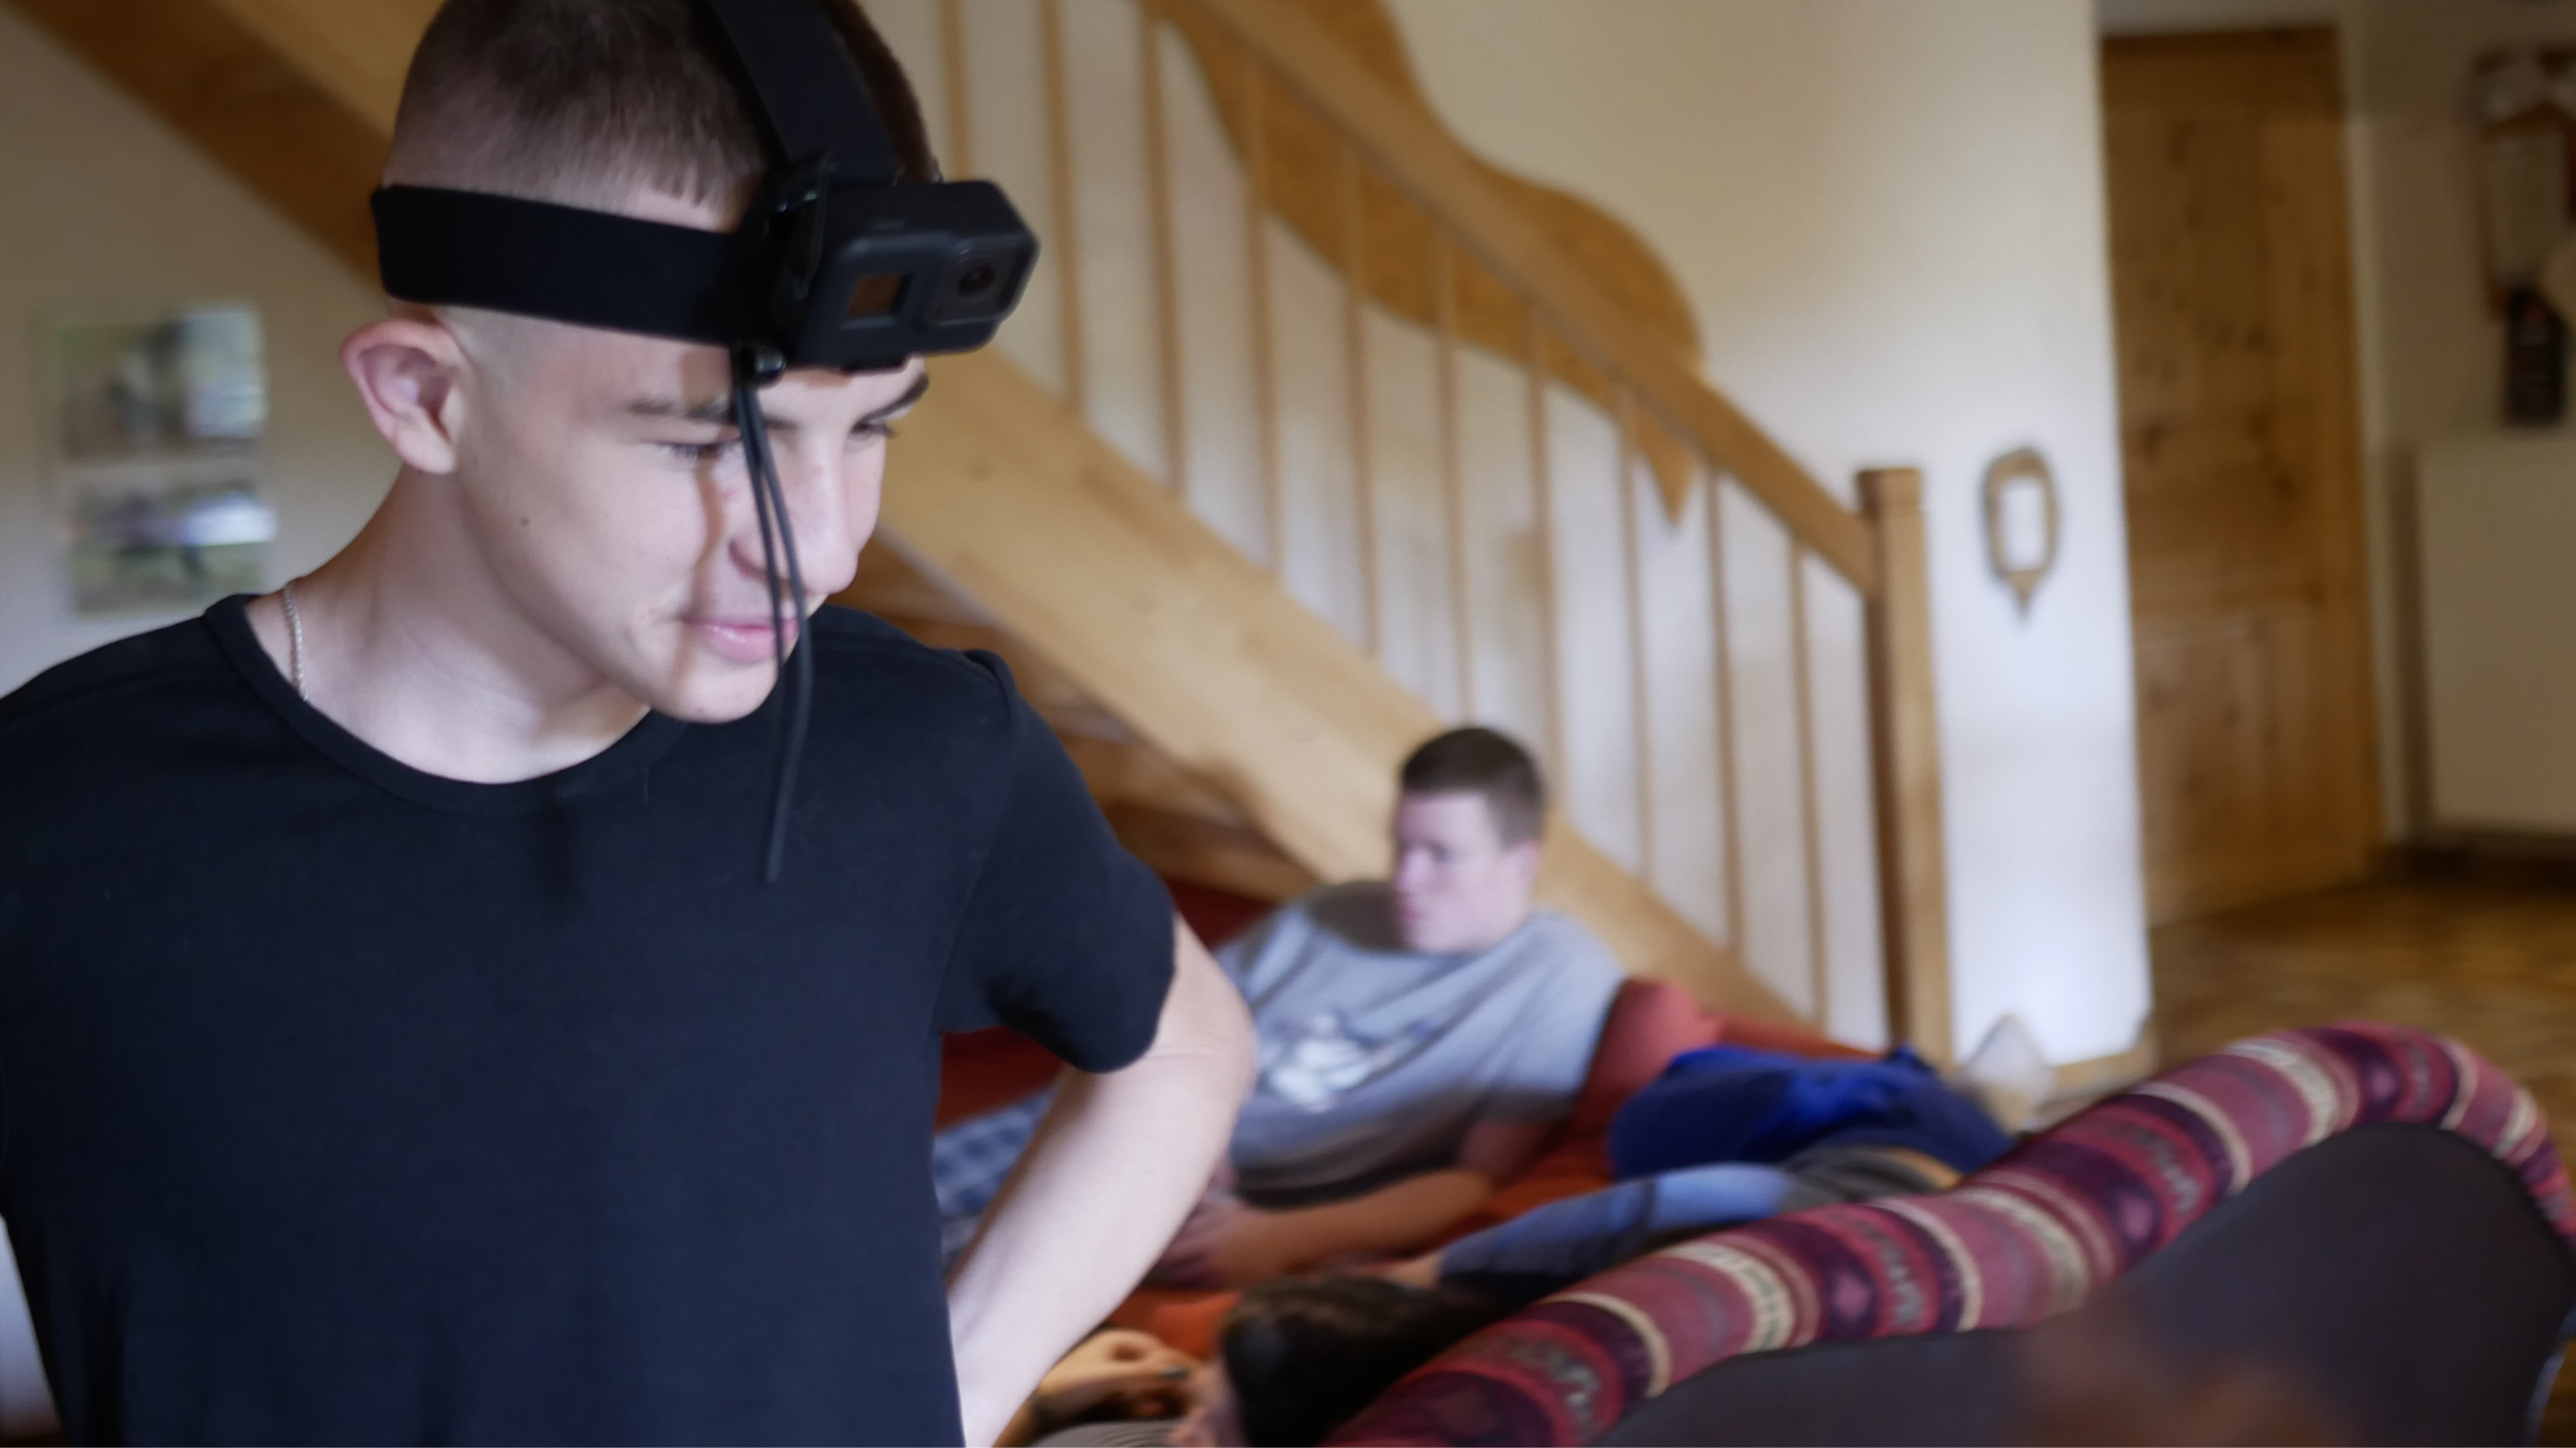 Ein Jugendlicher mit GoPro-Kopfhalterung im Vordergrund. Im Hintergrund ein weiterer Jugendlicher auf einem Sofa.